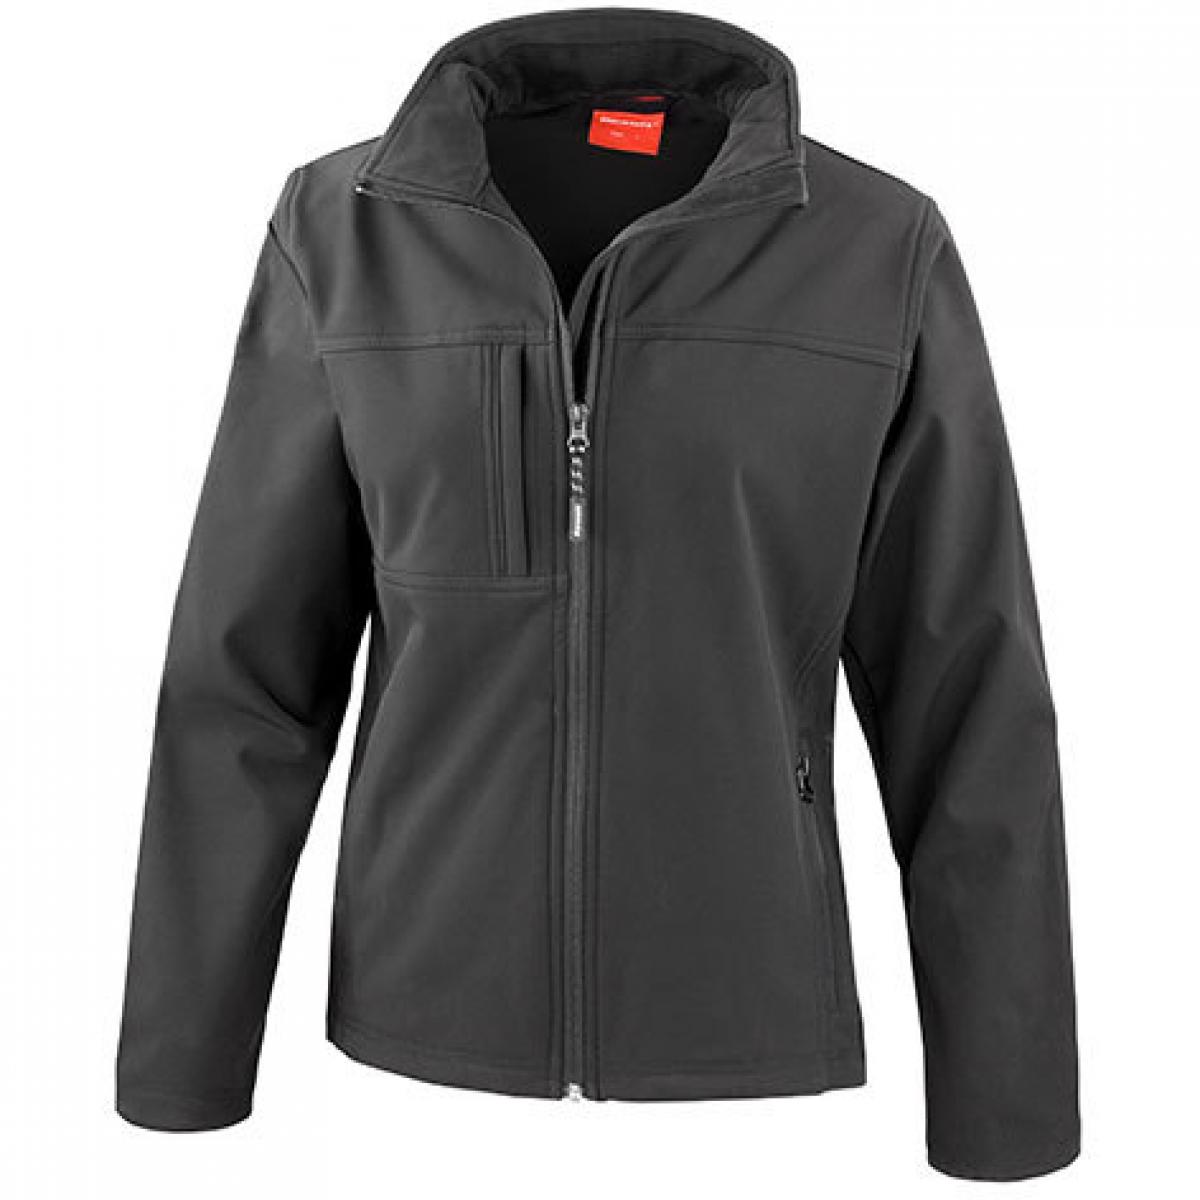 Hersteller: Result Herstellernummer: R121F Artikelbezeichnung: Ladies Classic Soft Shell Jacket Farbe: Black